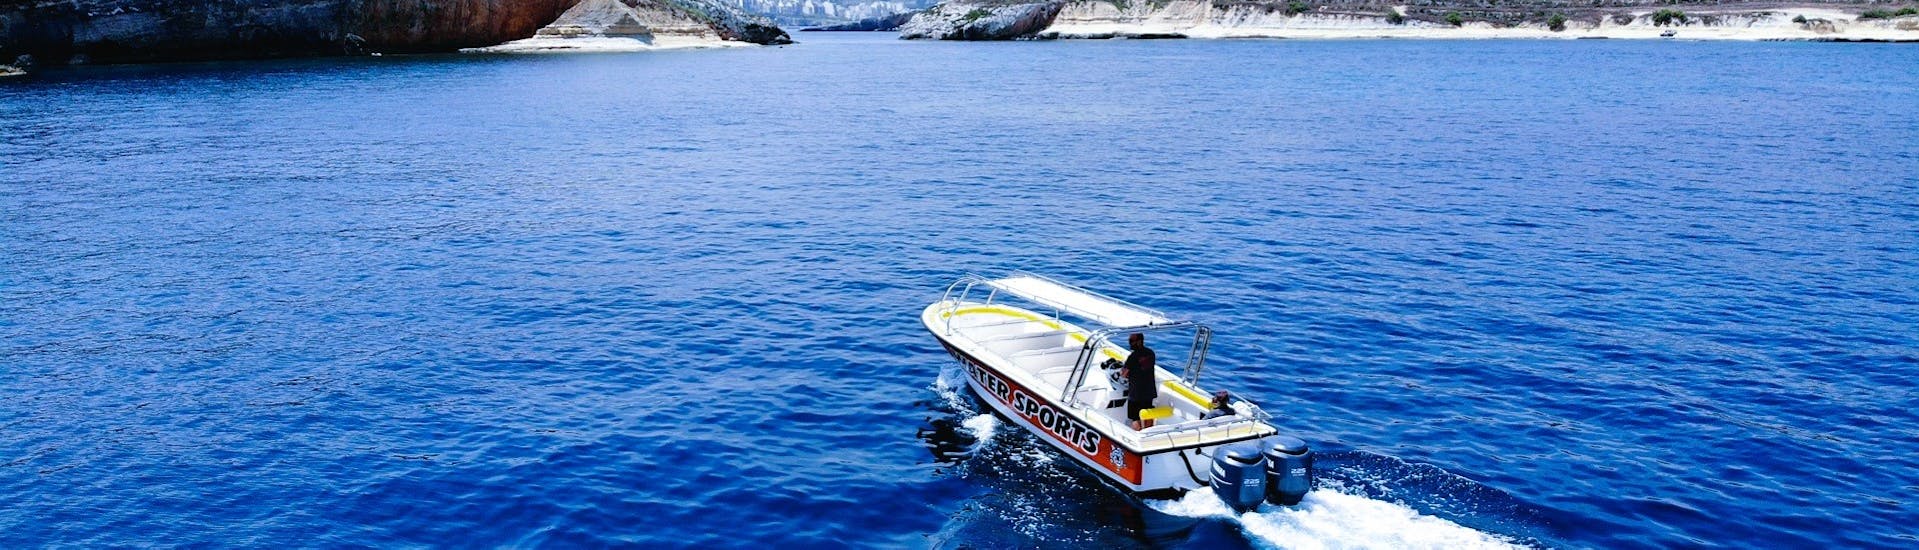 Bootstour - Comino mit Schwimmen & Sightseeing mit Whyknot Cruises Malta.